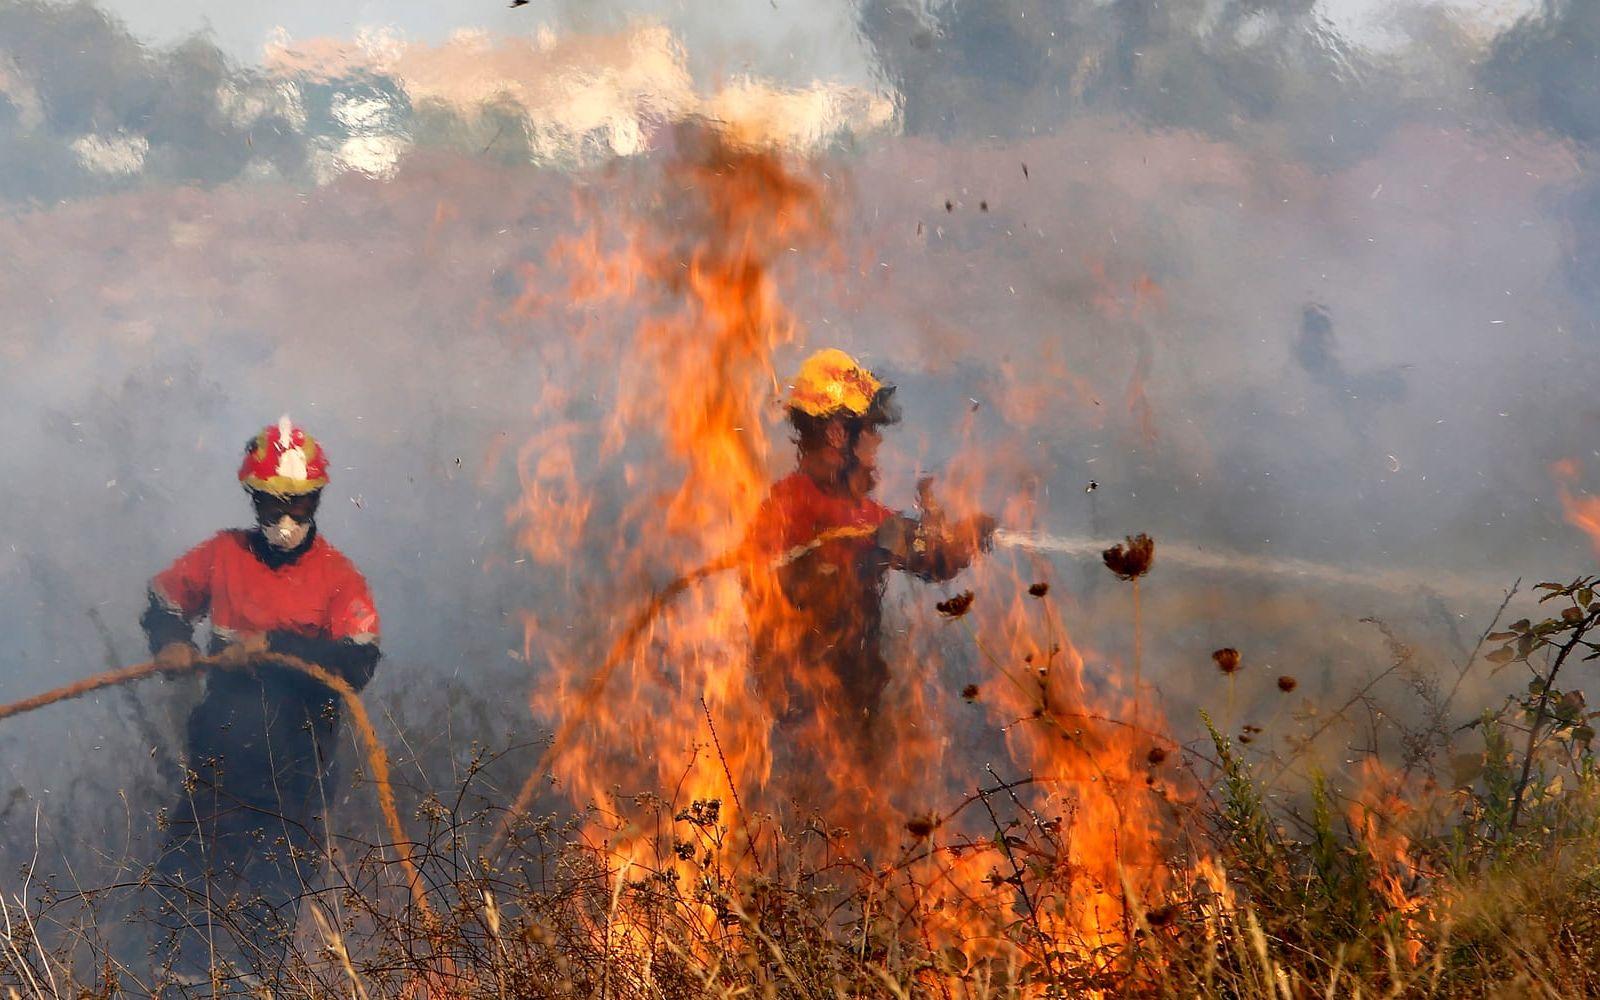 Det är just nu mycket torrt på många håll i Europa. Under juli har desssutom kraftiga skogsbränder rasat i bland annat Kroatien, Portugal och Spanien under den förra värmeböljan. Bild: TT